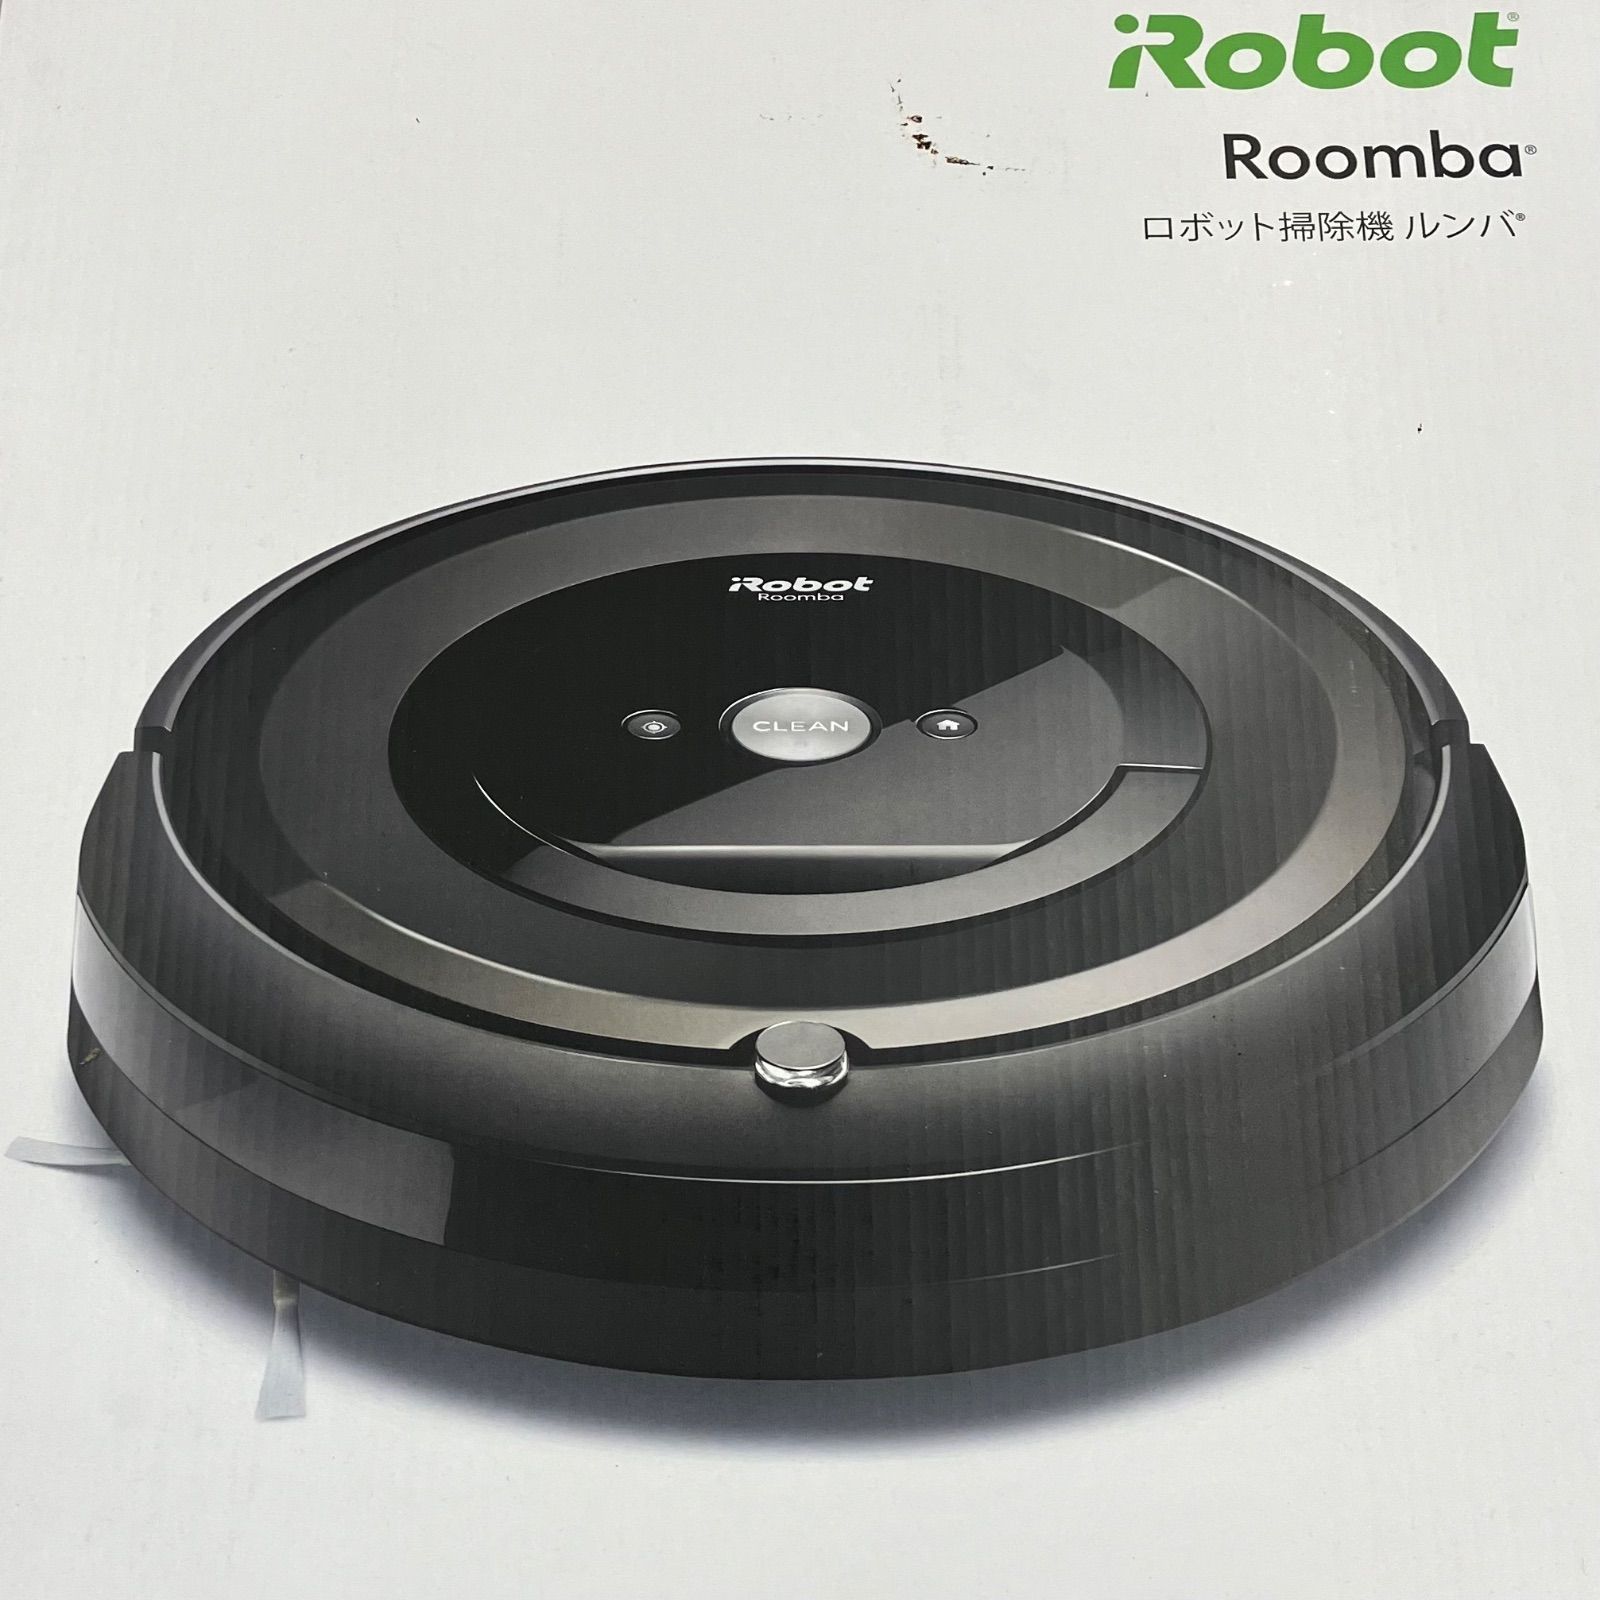 ルンバ e5 iRobot ロボット掃除機 ルンバ e5 e5150 アイロボット ロボット 掃除機 - メルカリ